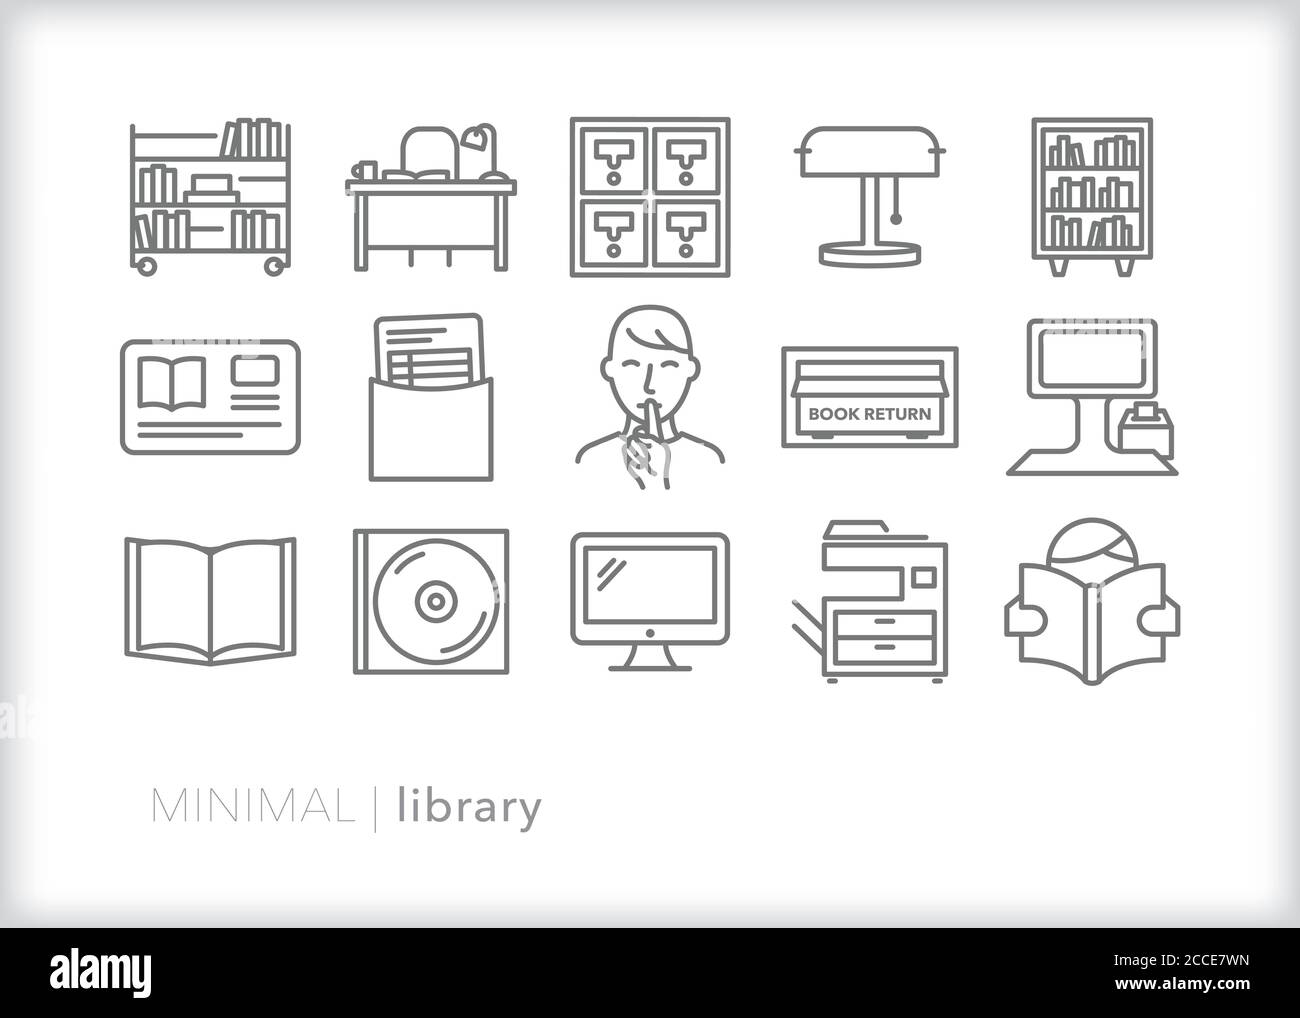 Insieme di icone di libreria per l'utilizzo di risorse di riferimento, narrativa e narrativa in una biblioteca pubblica Illustrazione Vettoriale